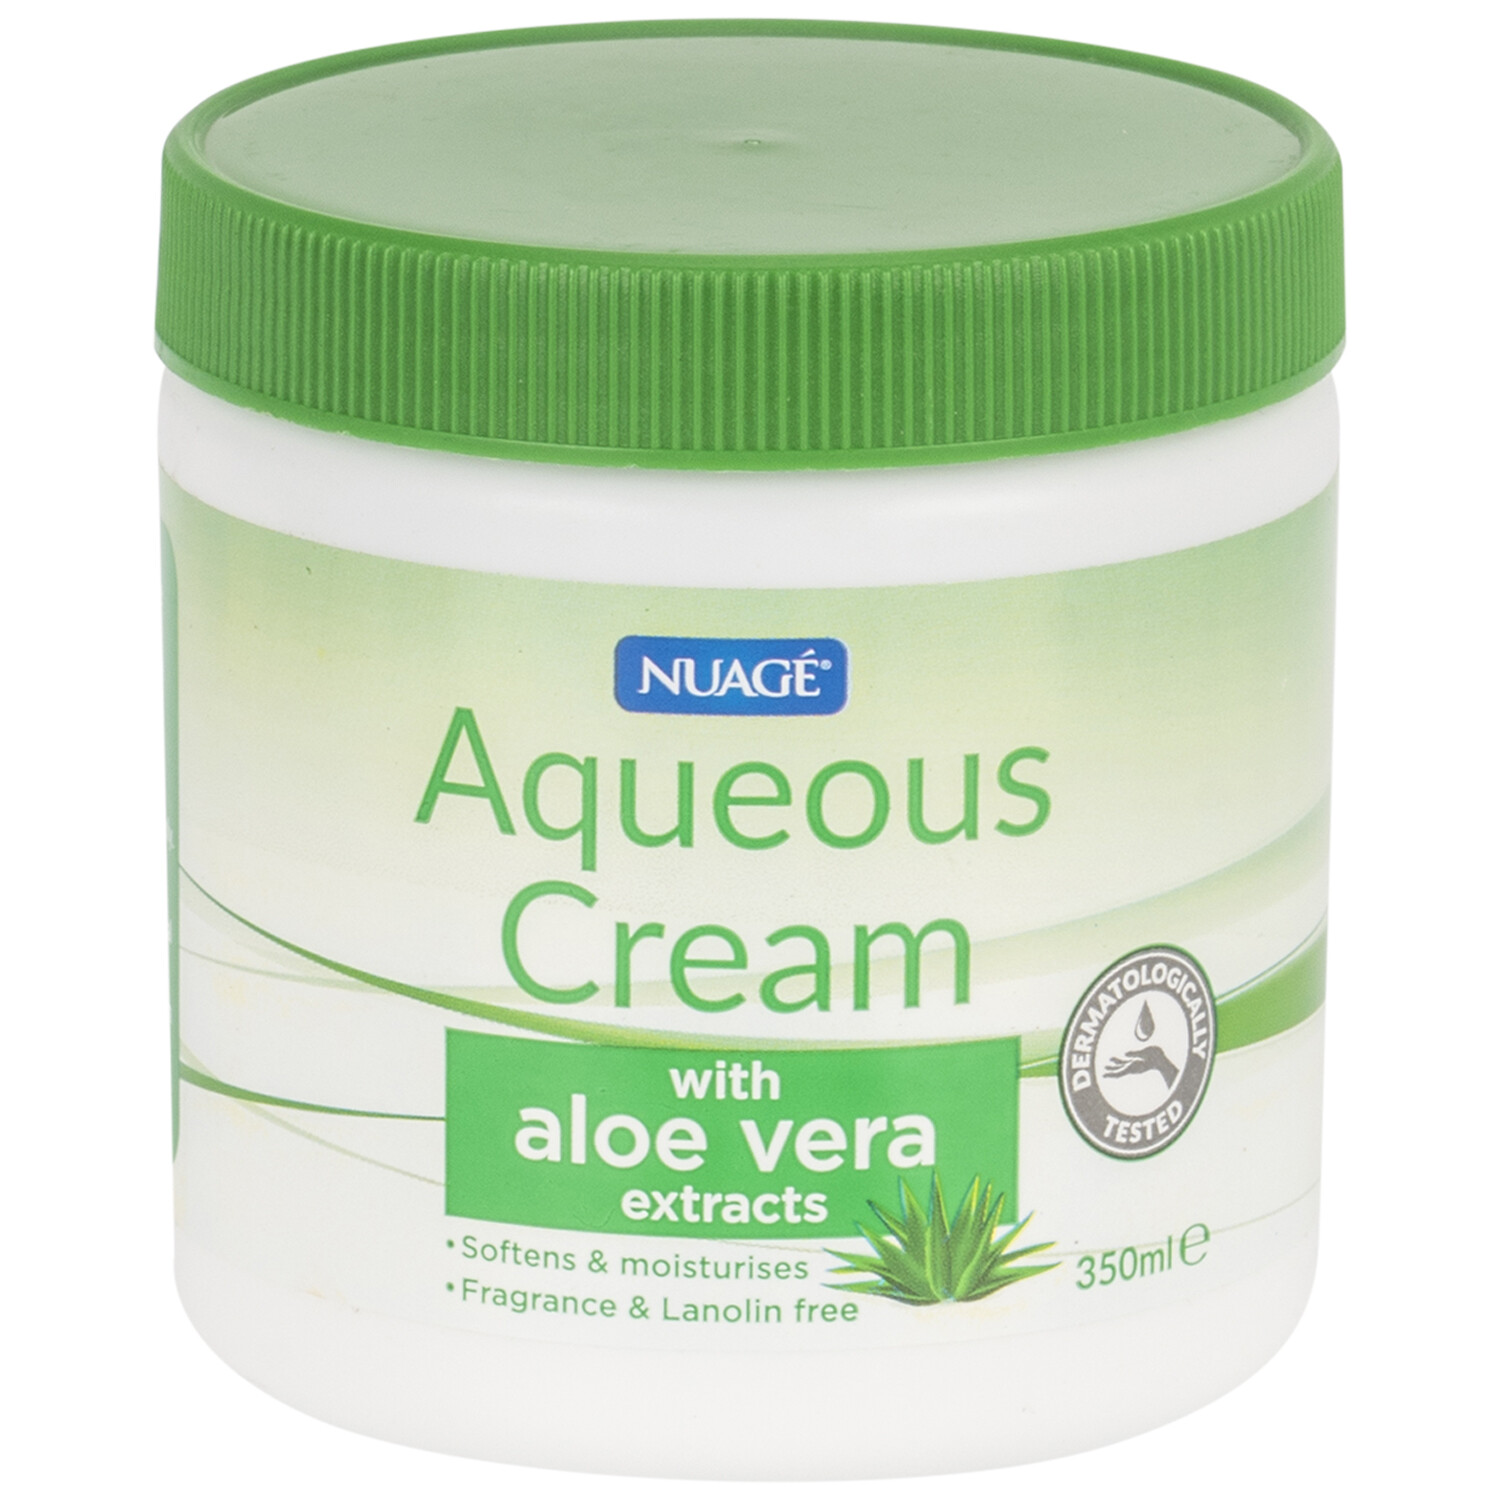 Nuage Aqueous Cream with Aloe Vera 250ml Image